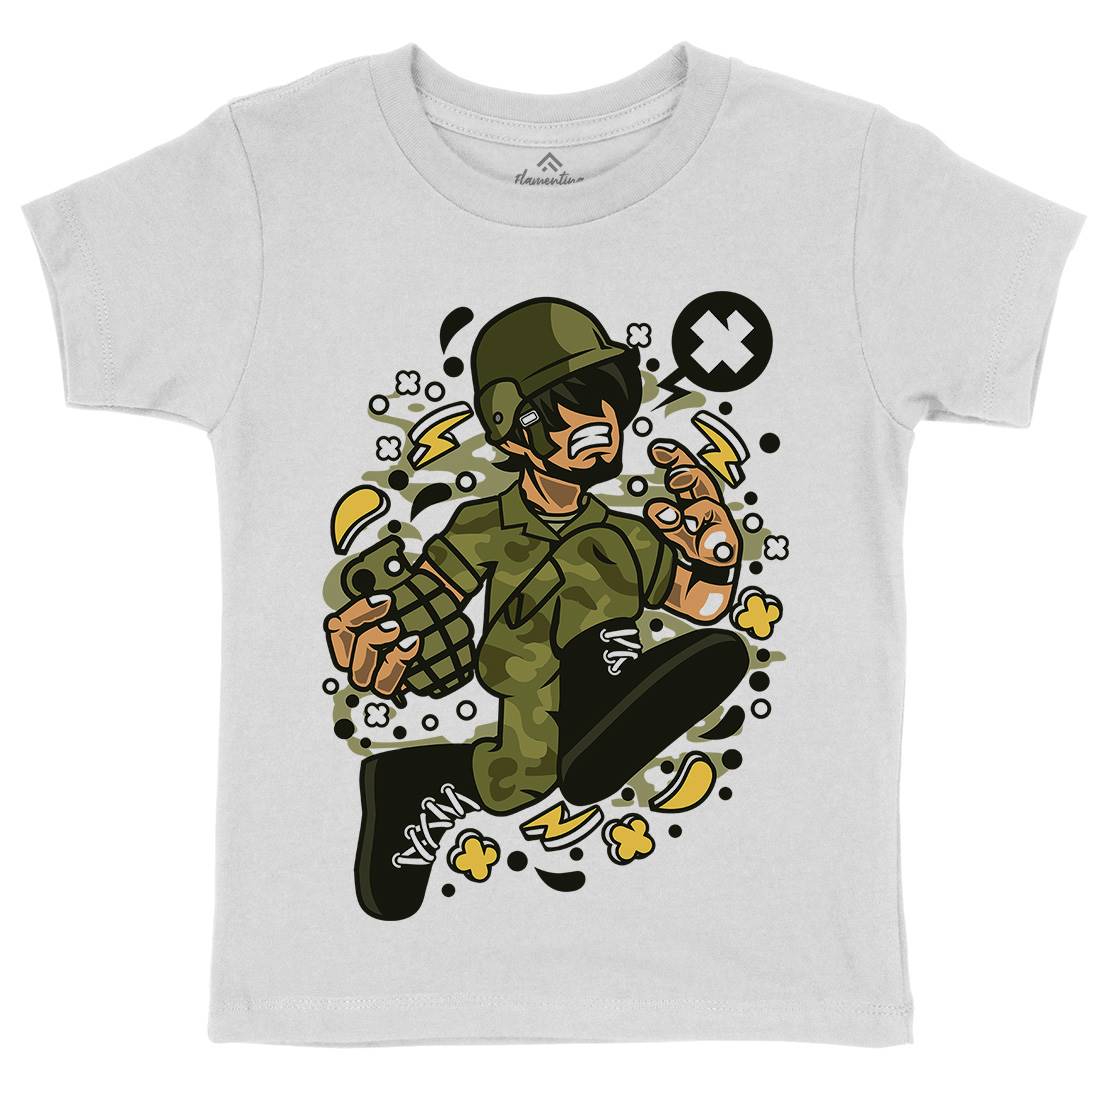 Soldier Running Kids Crew Neck T-Shirt Army C663